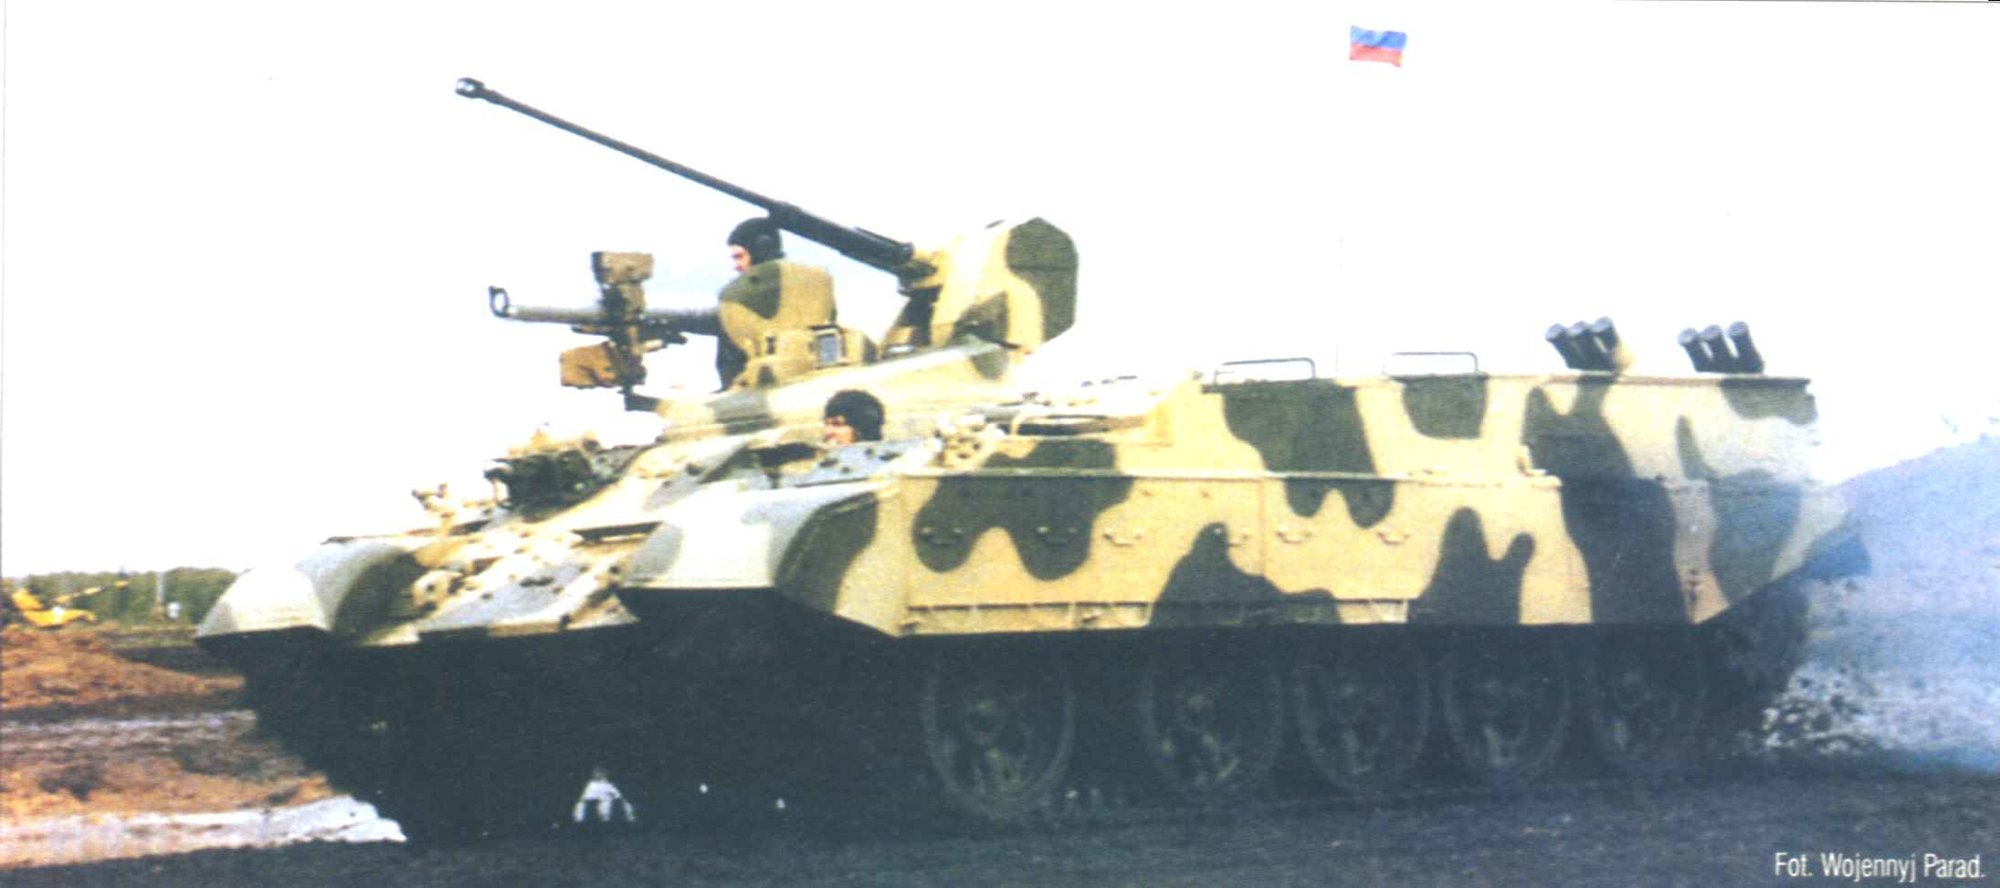 BTR-T1.jpg